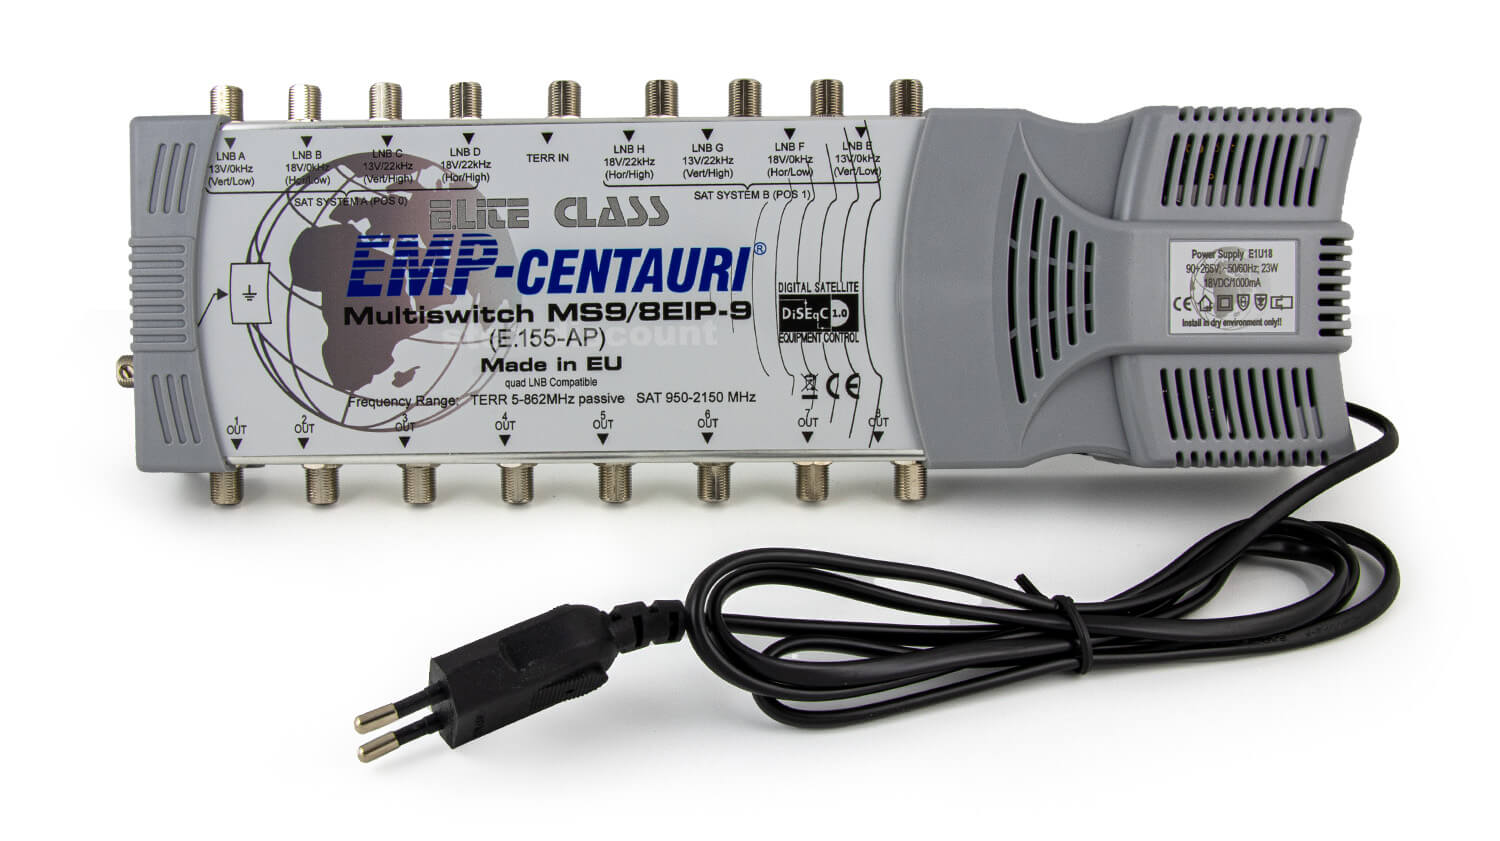 EMP Centauri 9/8 ECO Line Multischalter